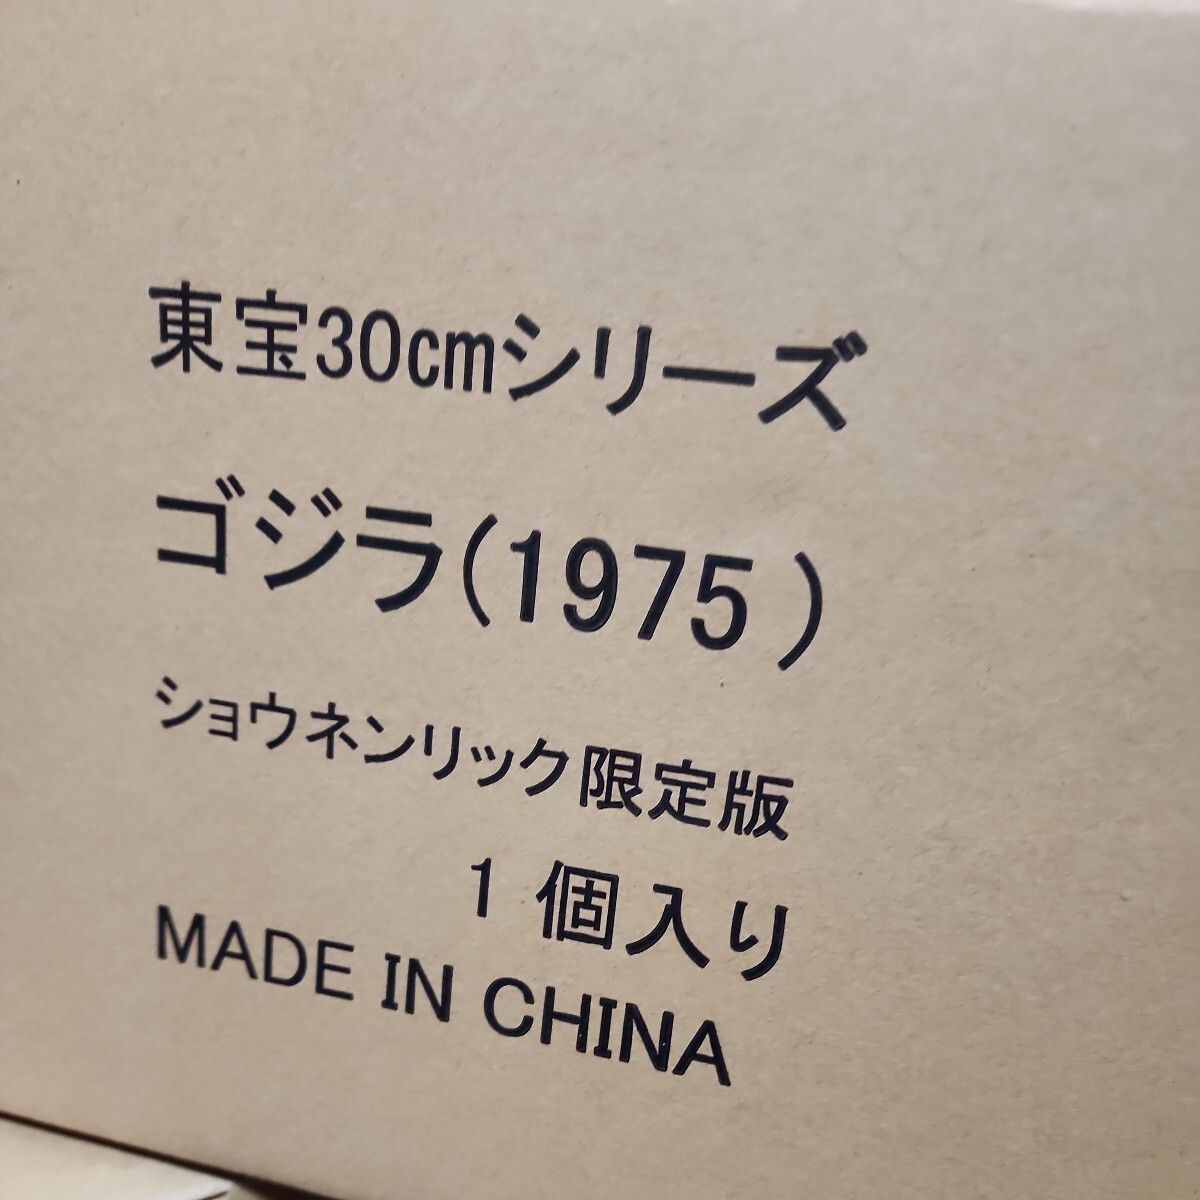 希少日本正規品少年リック限定版東宝30cmシリーズゴジラ1975開封未使用品、メカゴジラ頭部付輸送箱あり絶版入手困難レアメカゴジラの逆襲の画像10